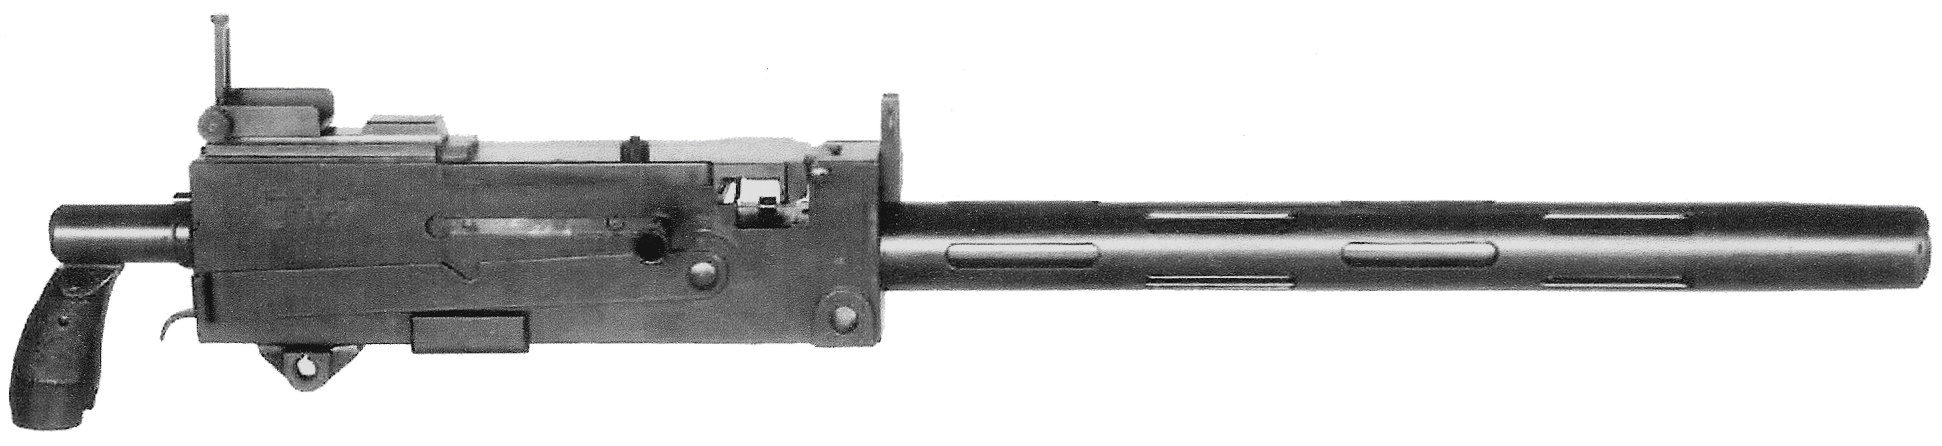 M1919A4_early_model.jpg